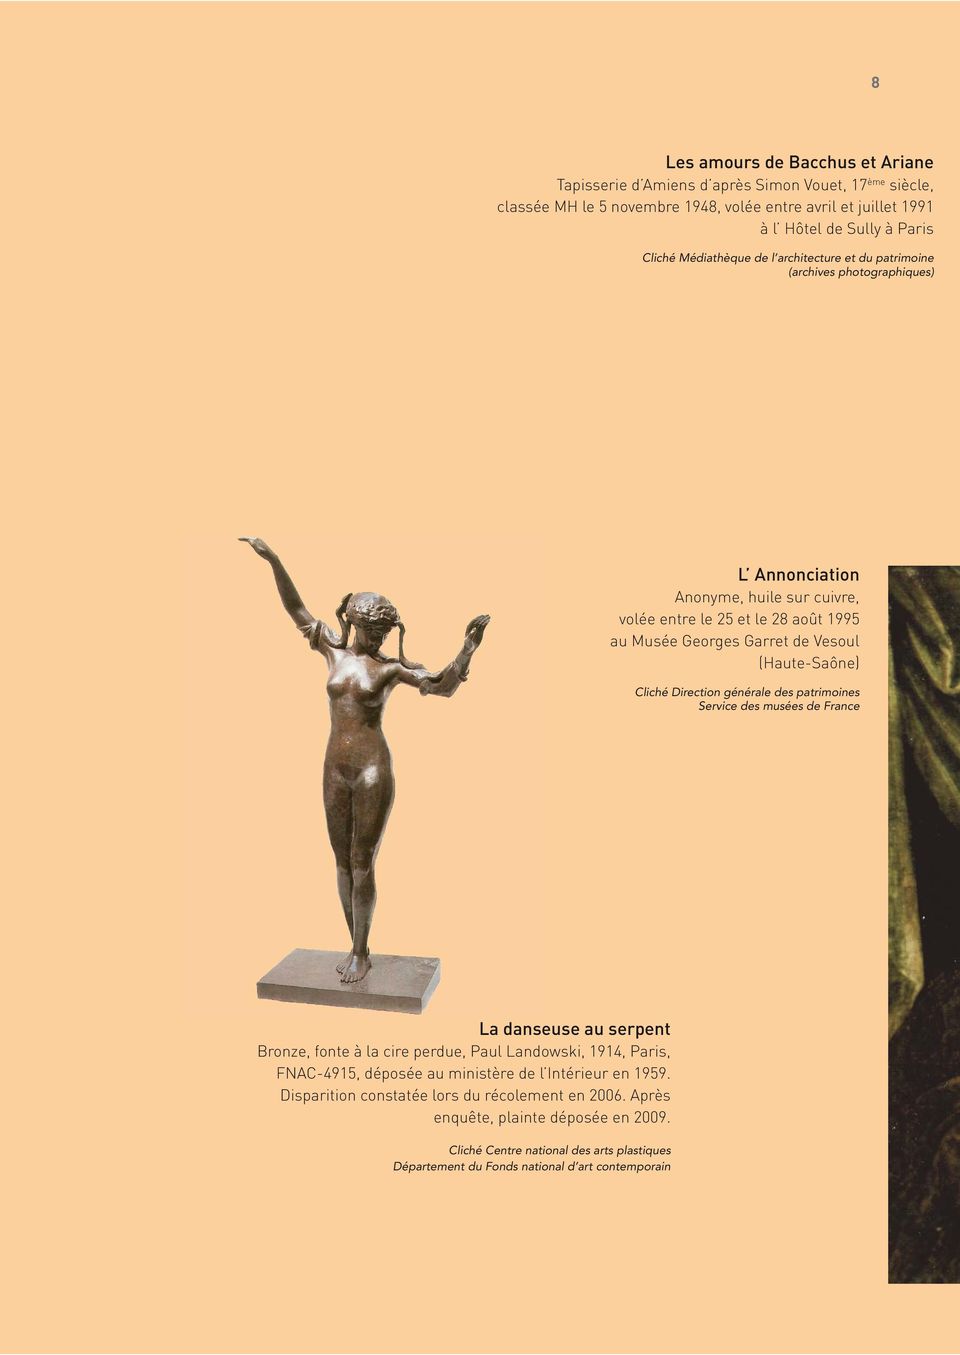 (Haute-Saône) Cliché Direction générale des patrimoines Service des musées de France La danseuse au serpent Bronze, fonte à la cire perdue, Paul Landowski, 1914, Paris, FNAC-4915, déposée au